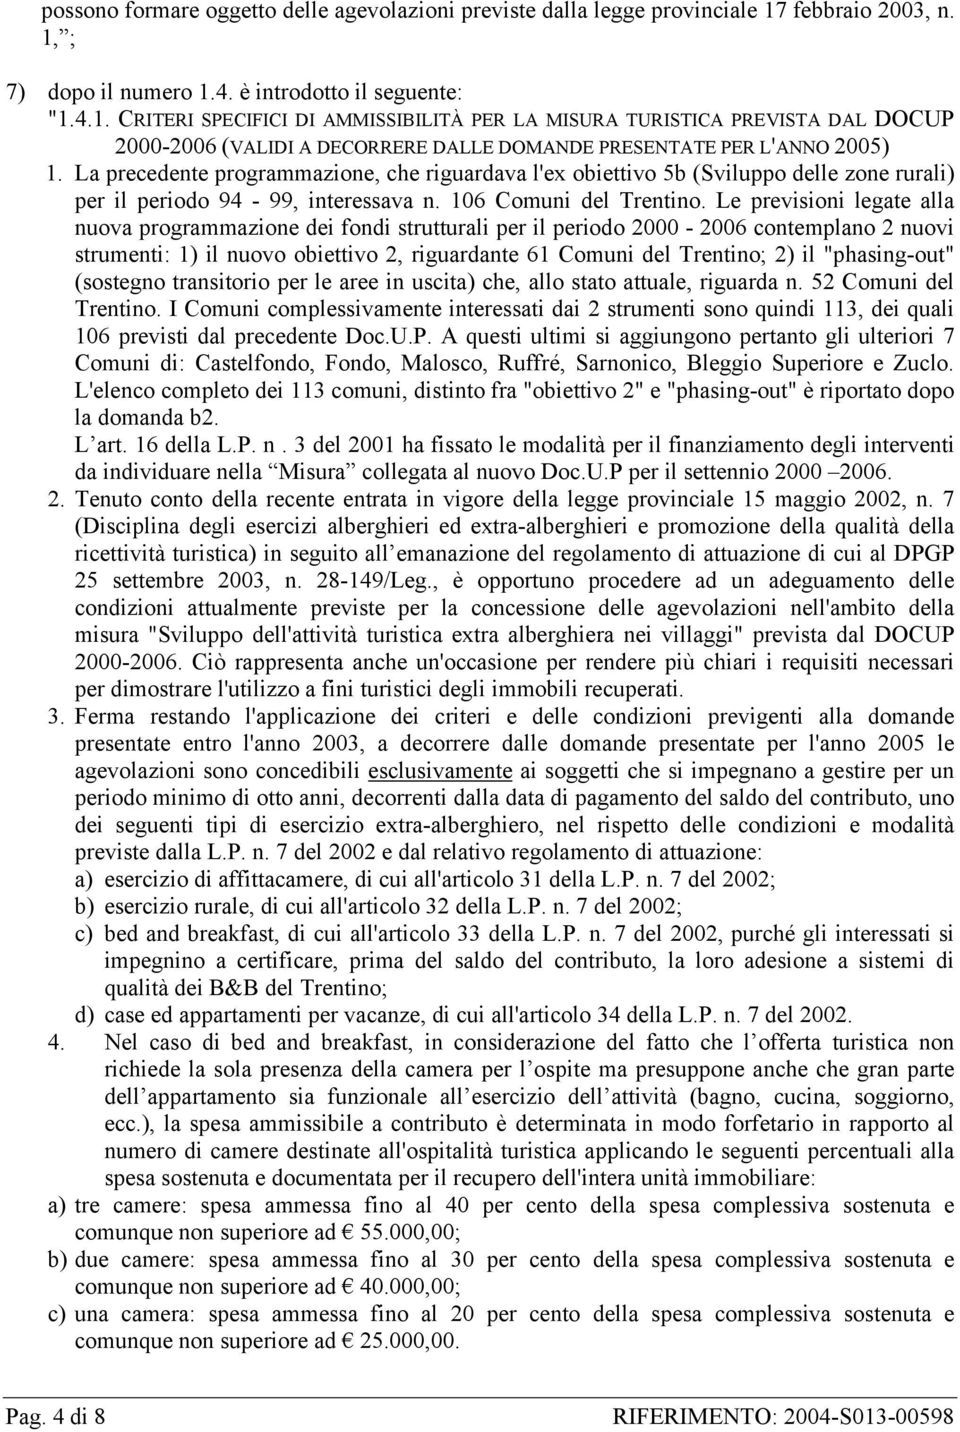 La precedente programmazione, che riguardava l'ex obiettivo 5b (Sviluppo delle zone rurali) per il periodo 94-99, interessava n. 106 Comuni del Trentino.